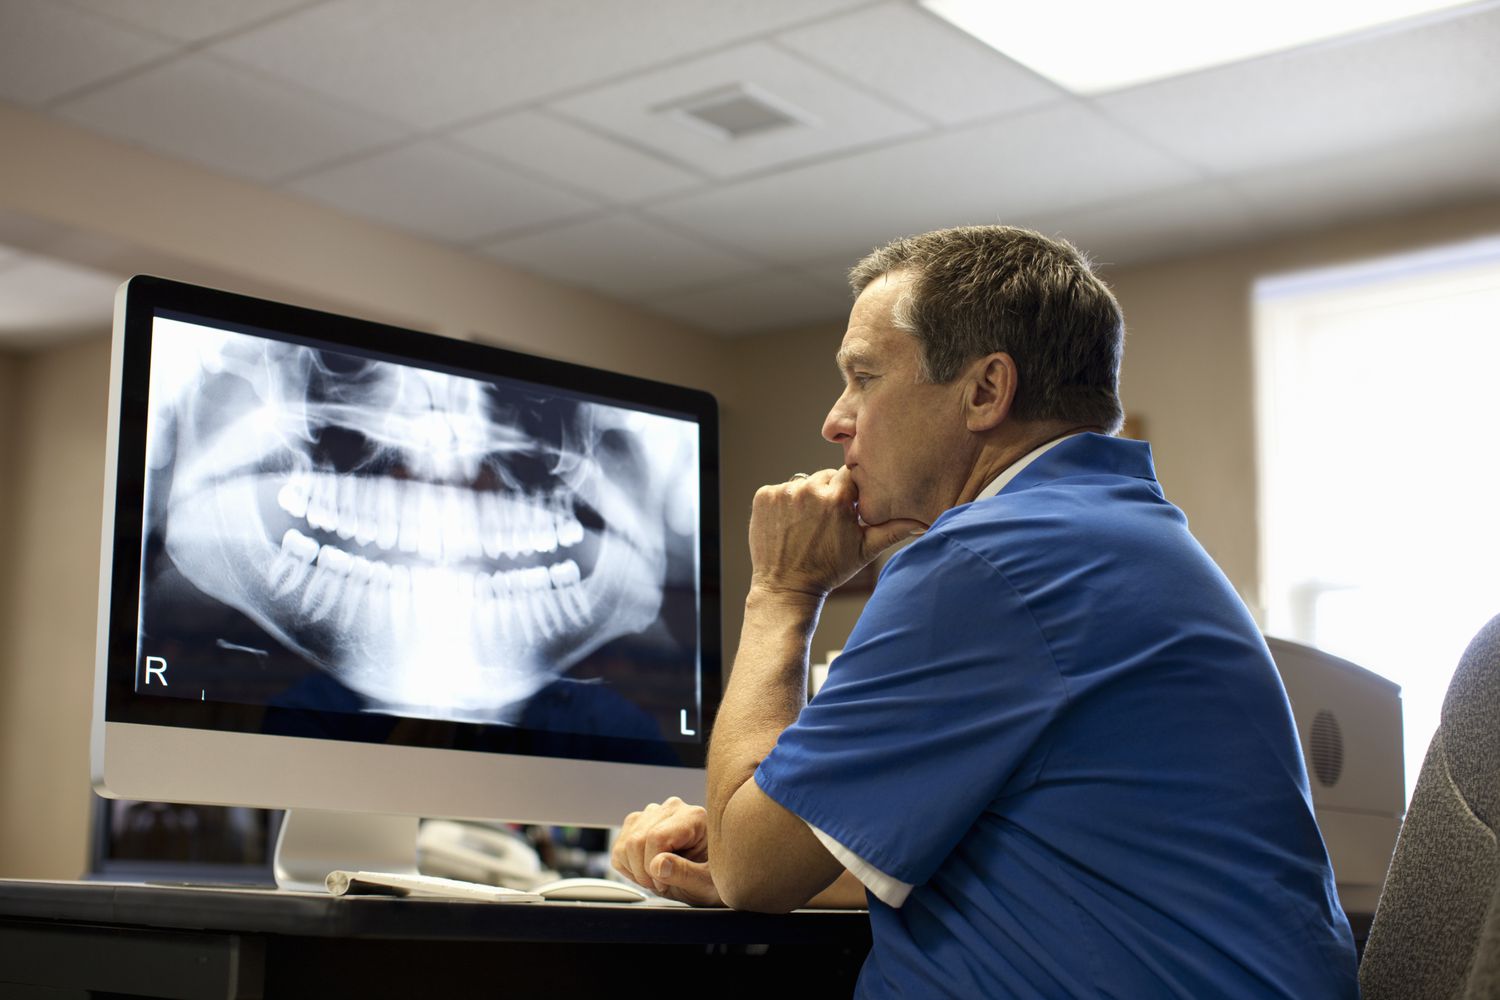 نقش رادیوگرافی در عصب کشی دندان